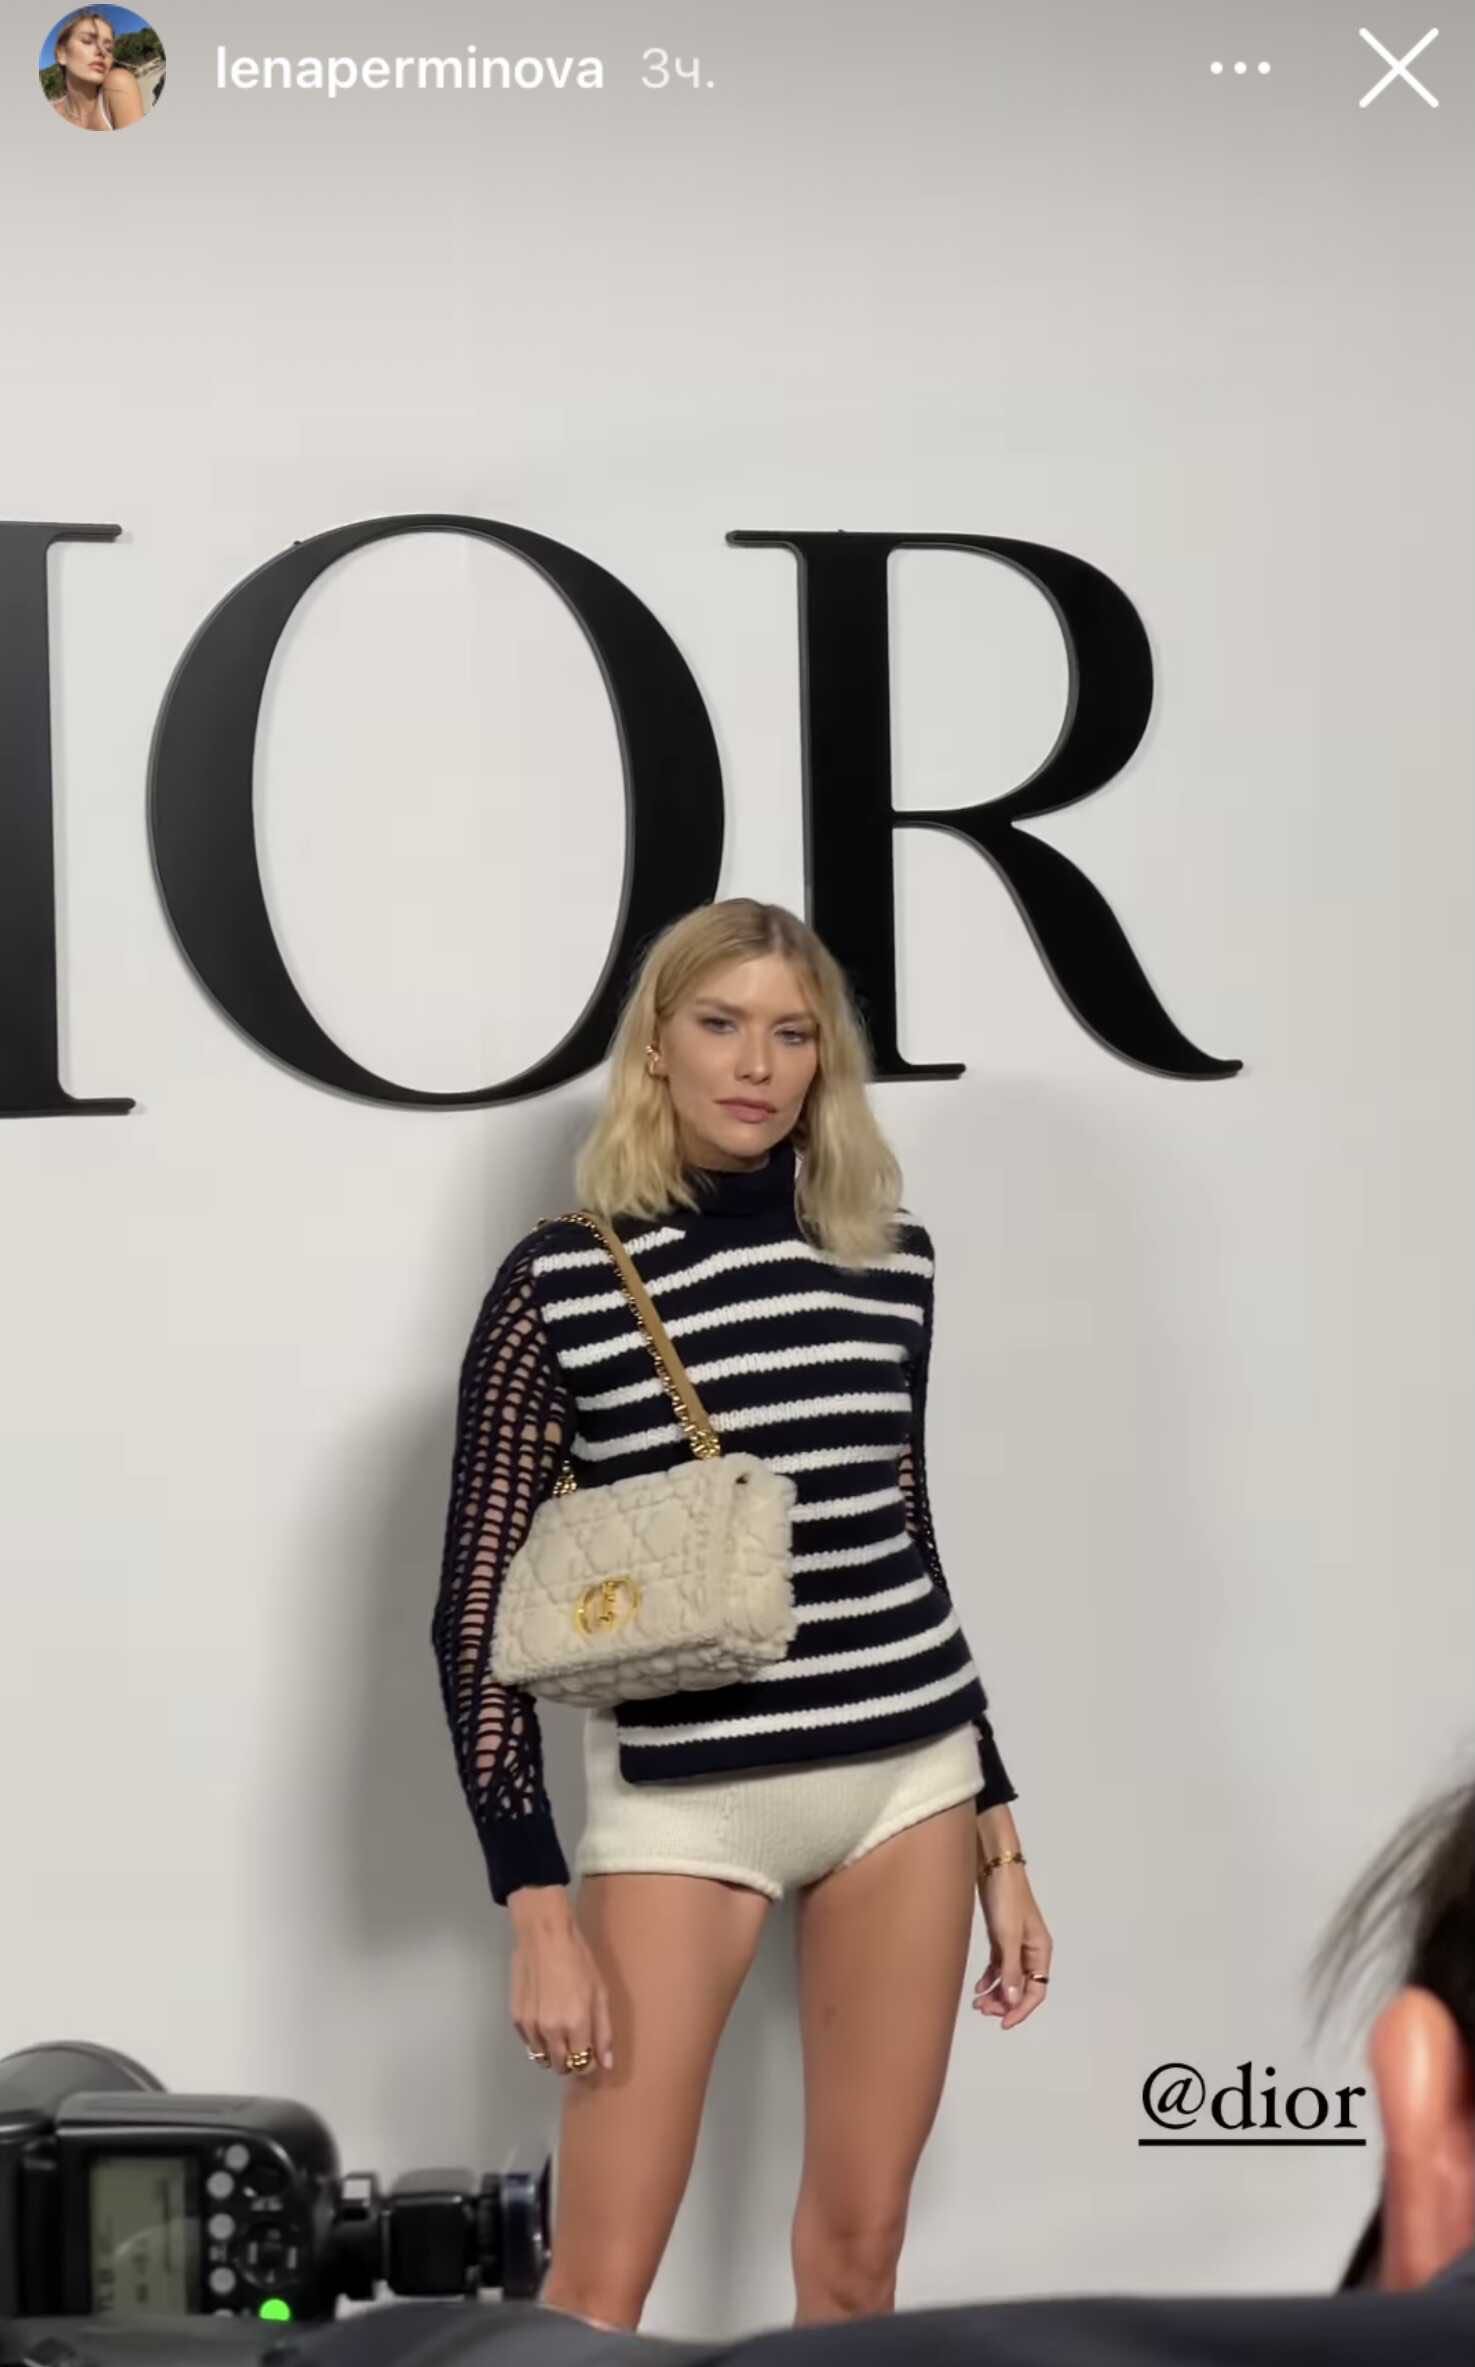 Елена Перминова вышла в свет в трусах с начёсом от Dior